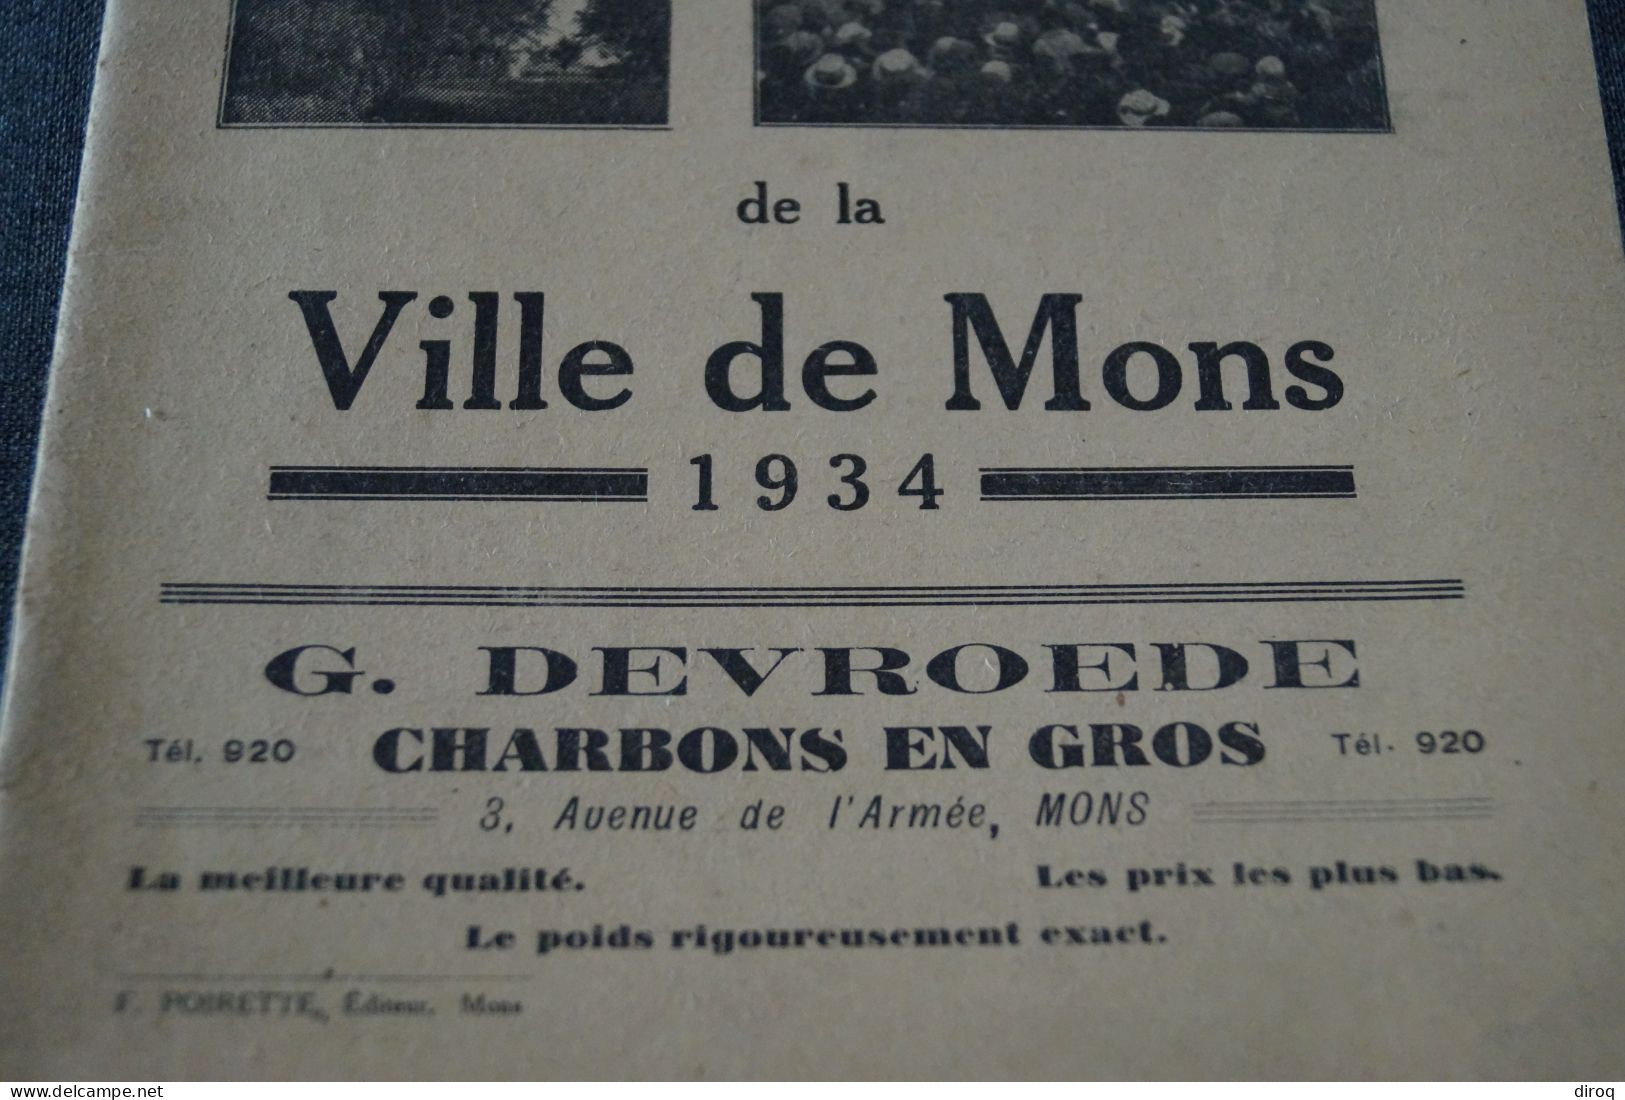 Festivités De Mons 1934,prospectus Originale D'époque,complet Et En Bel état De Collection,24 Cm./15,5 Cm. - Historische Dokumente